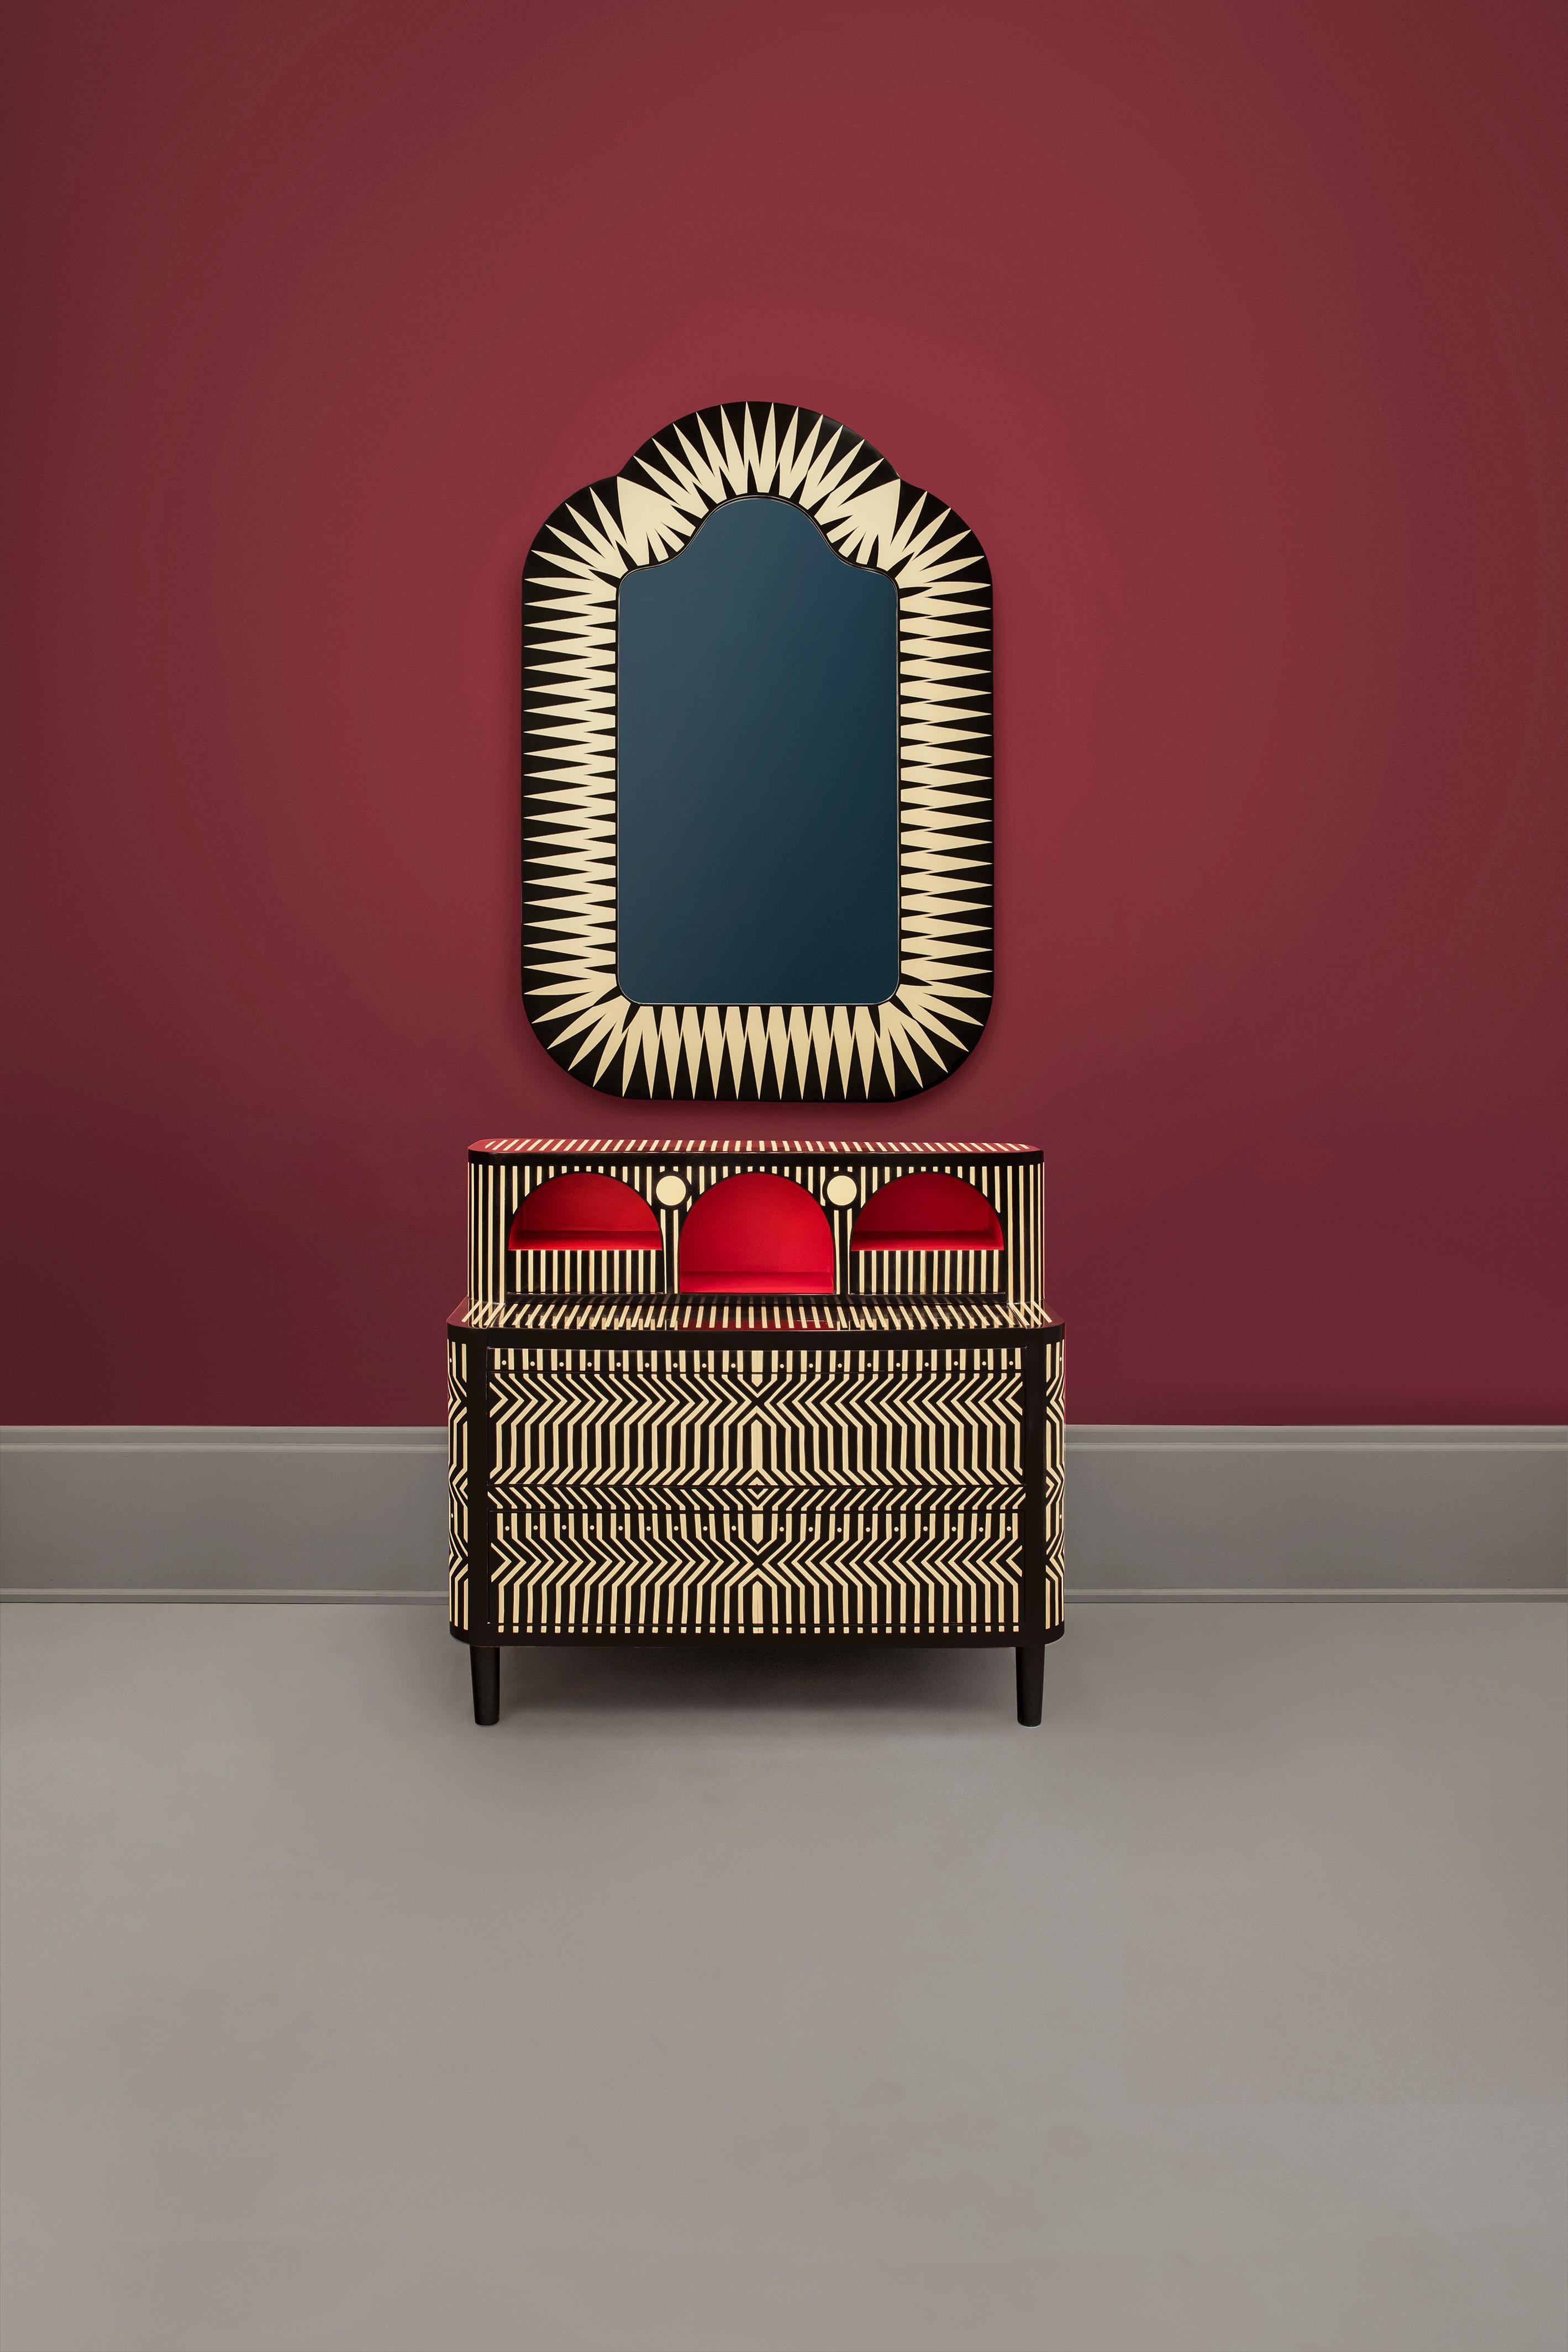 Der Big Parade Tall Floor Mirror von Matteo Cibic ist ein großer Spiegel in lustiger Form. Er steht in jedem Innenraum hoch.

Indiens Kunsthandwerk ist so vielfältig wie seine Kulturen und so reich wie seine Geschichte. Die Kunst der Knochen- und